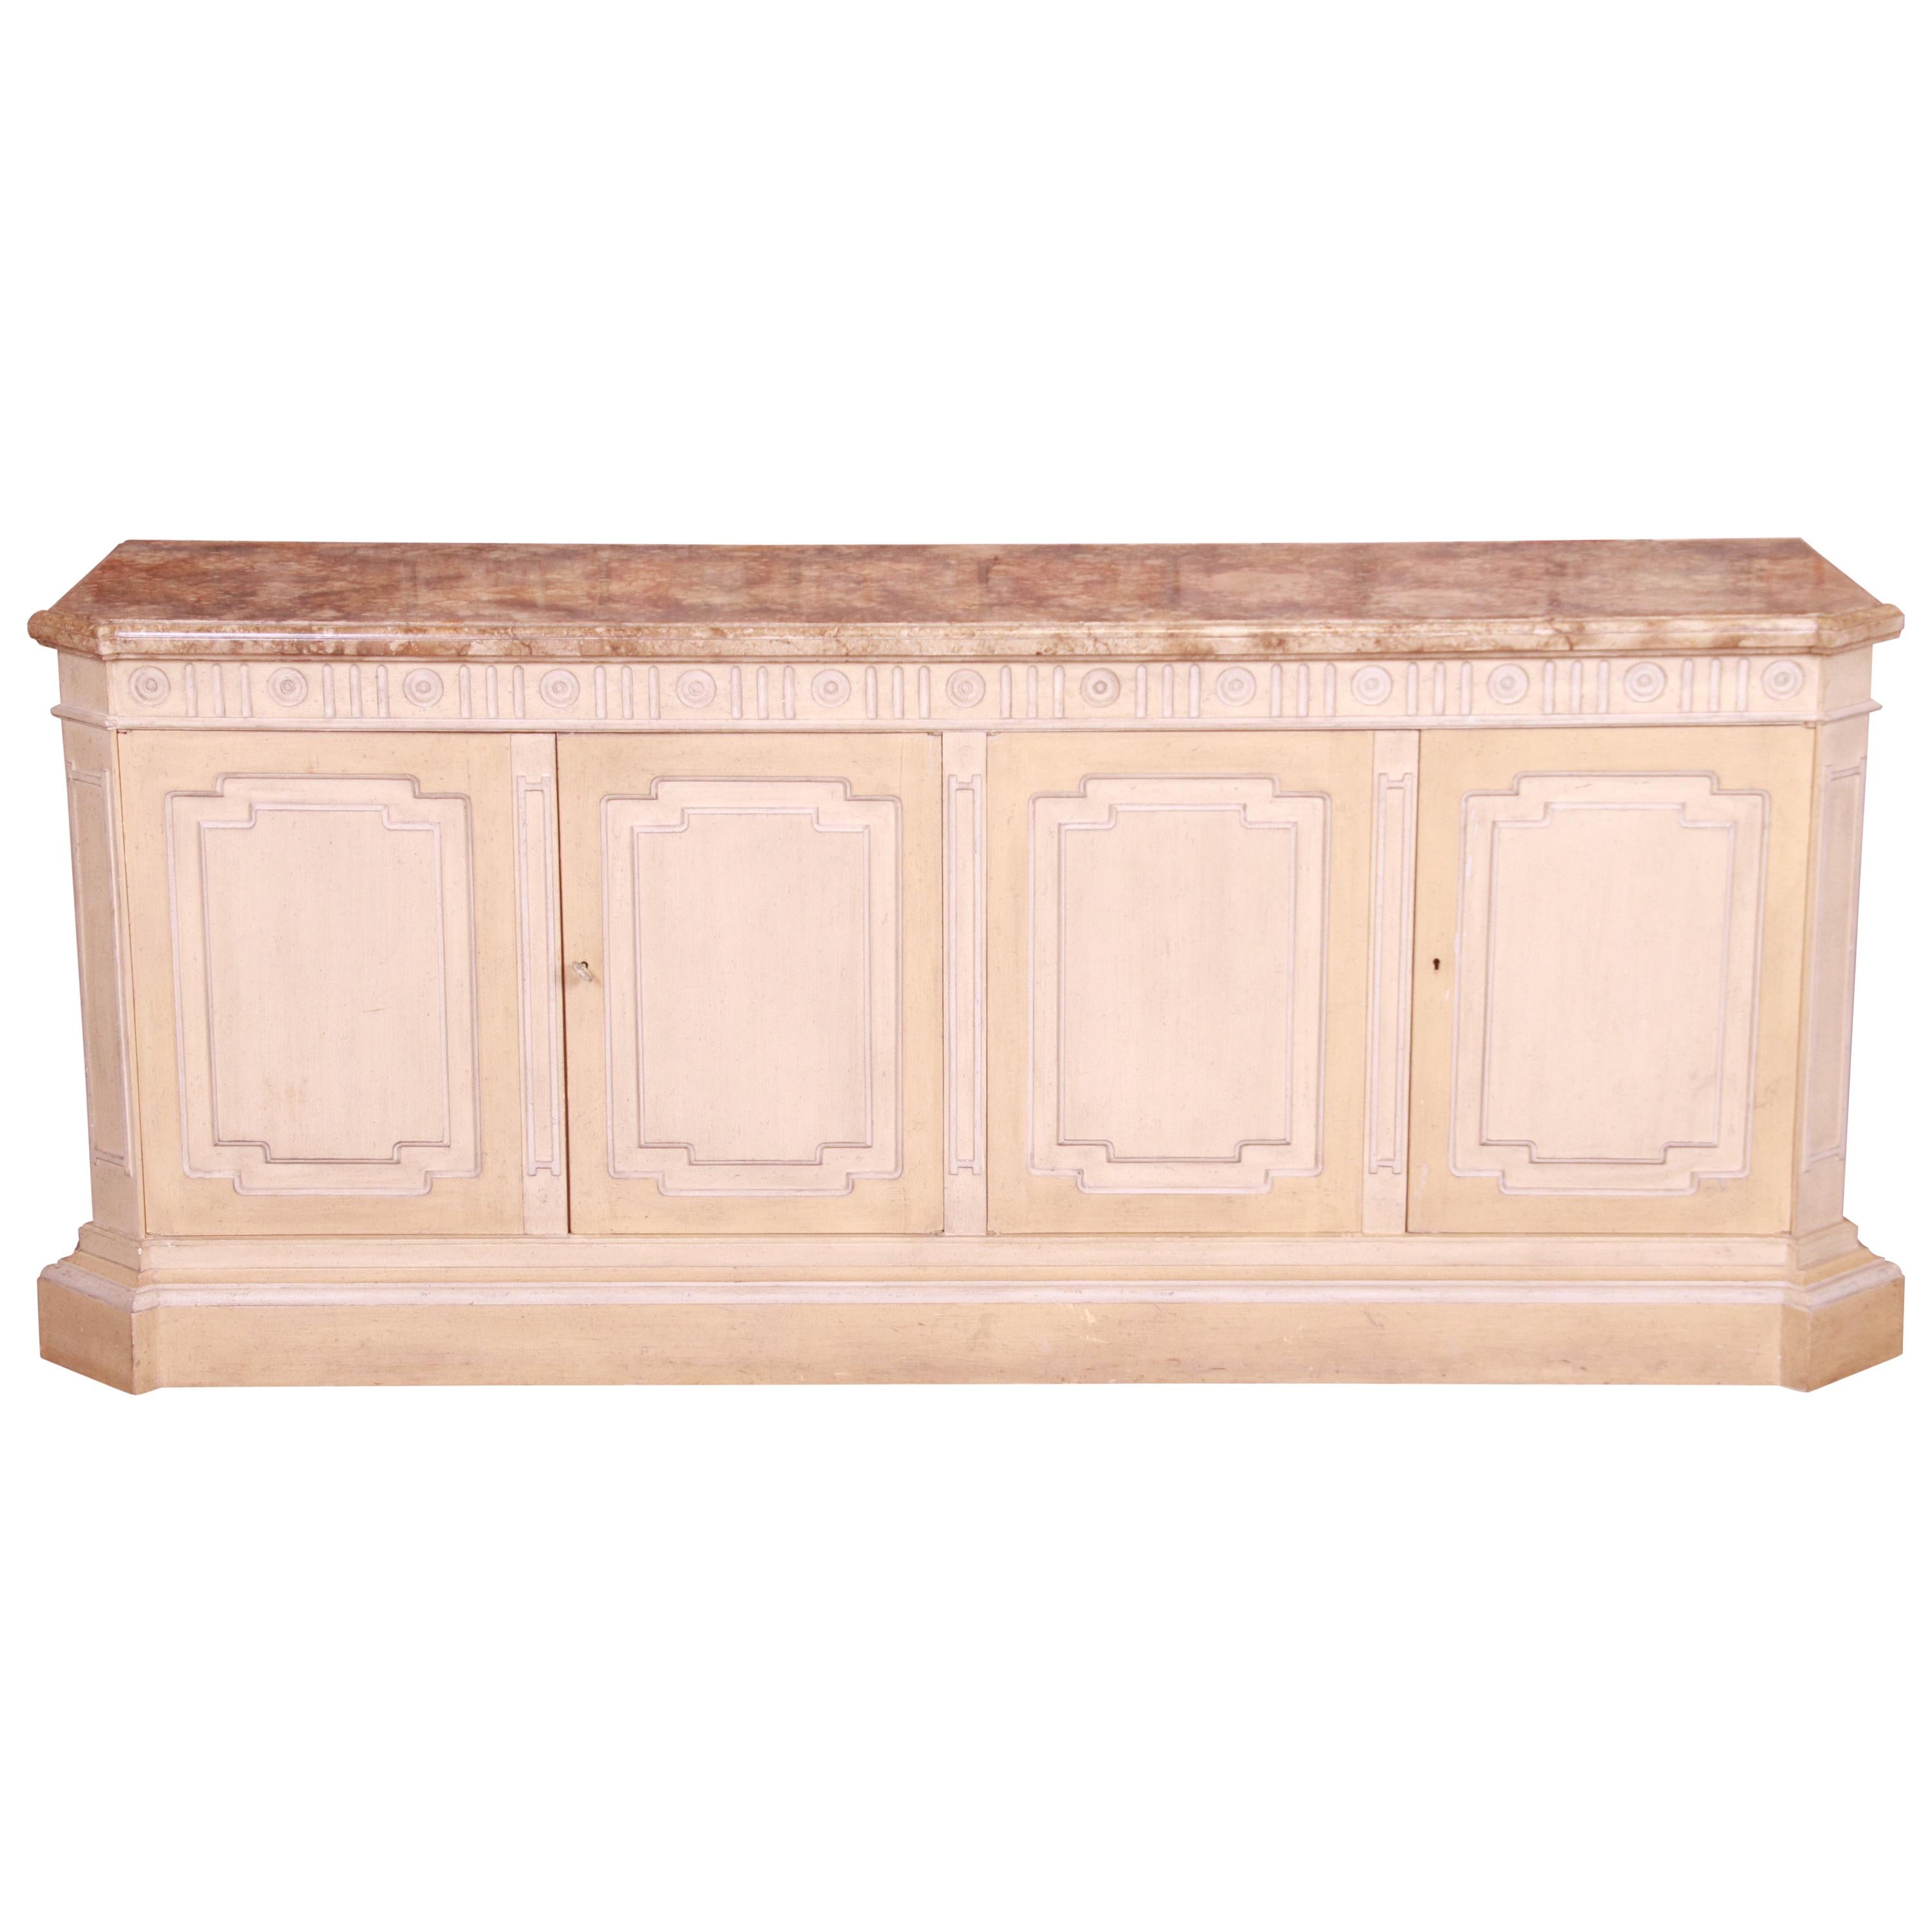 Baker Furniture Mediterranean Style Sideboard Credenza or Bar Cabinet